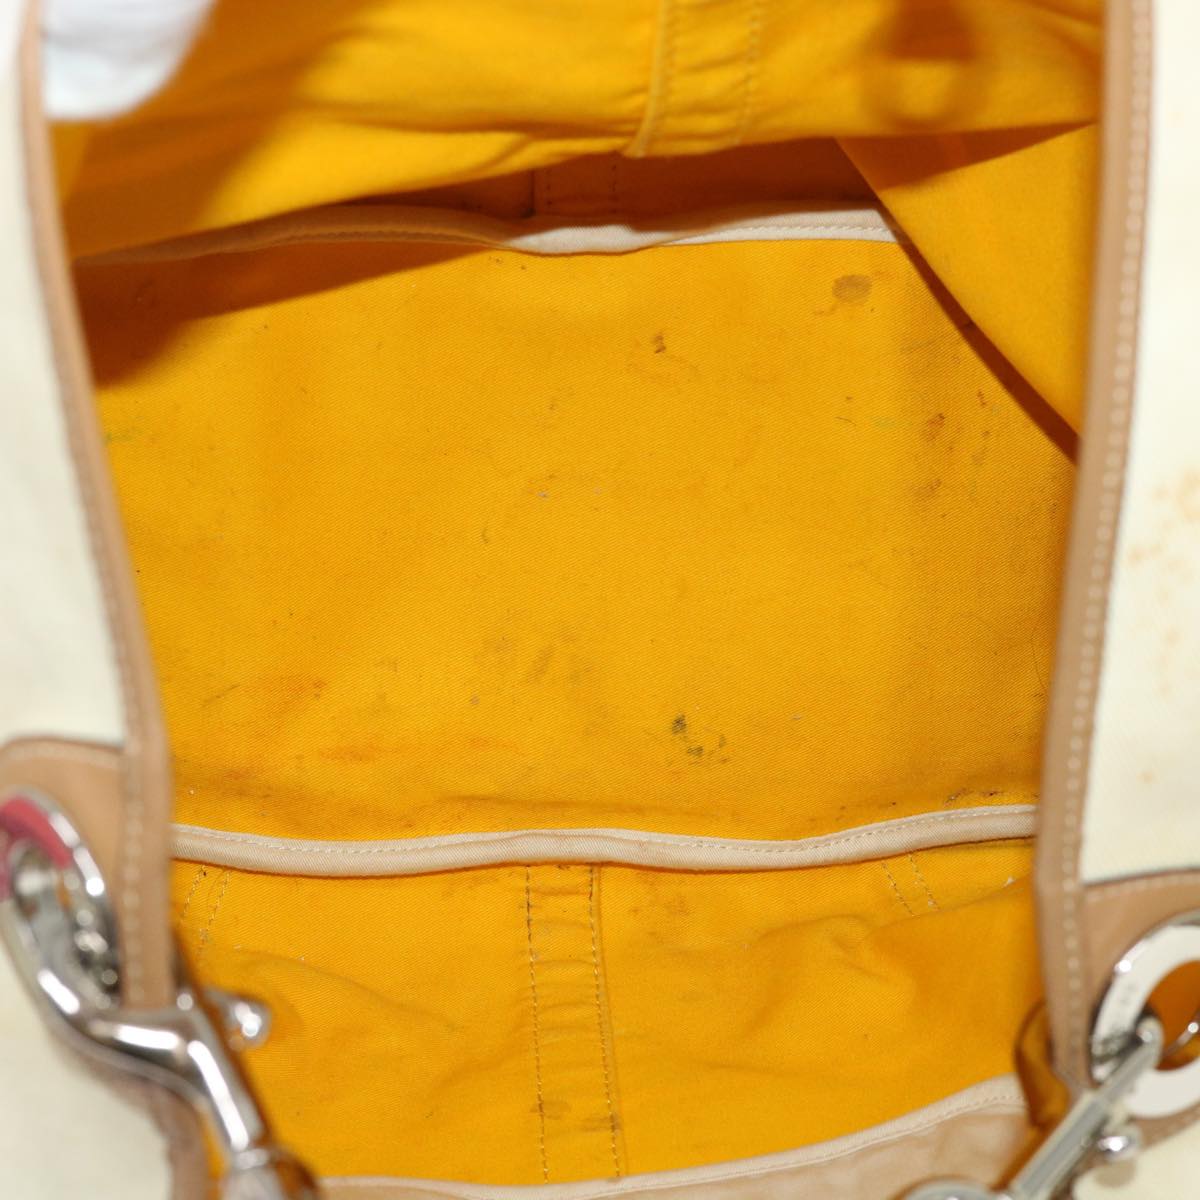 Coach Signature Shoulder Bag Canvas Leather 5Set Beige Navy pink Auth ar10121